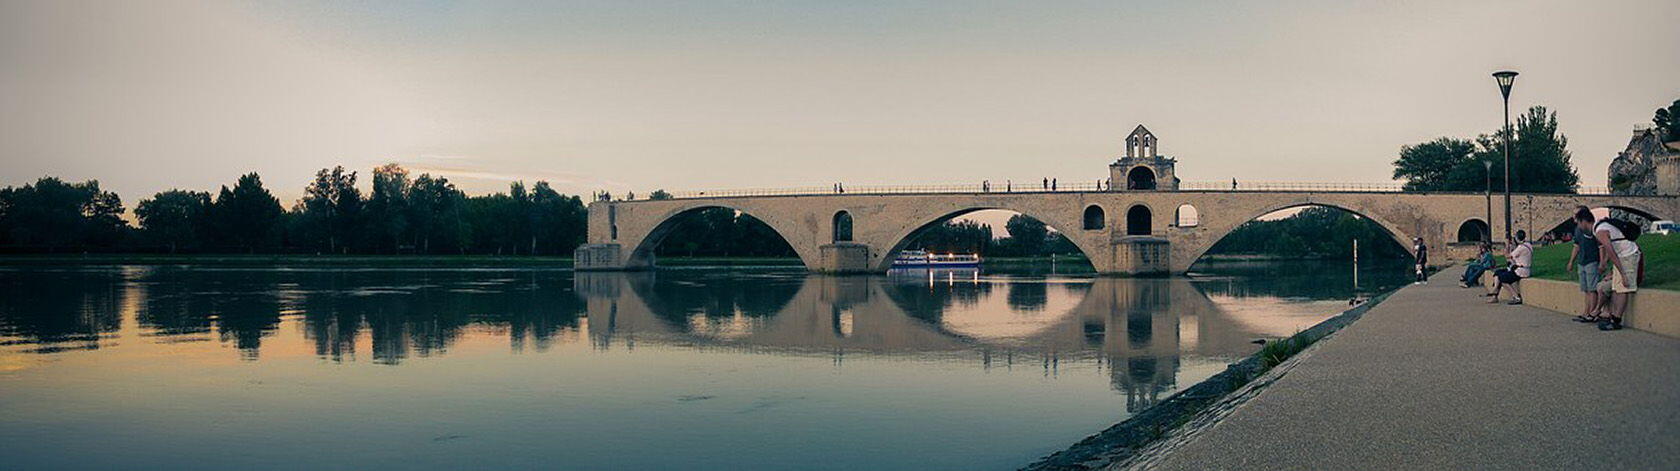 Pont d'Avignon Rhône River Pixabay